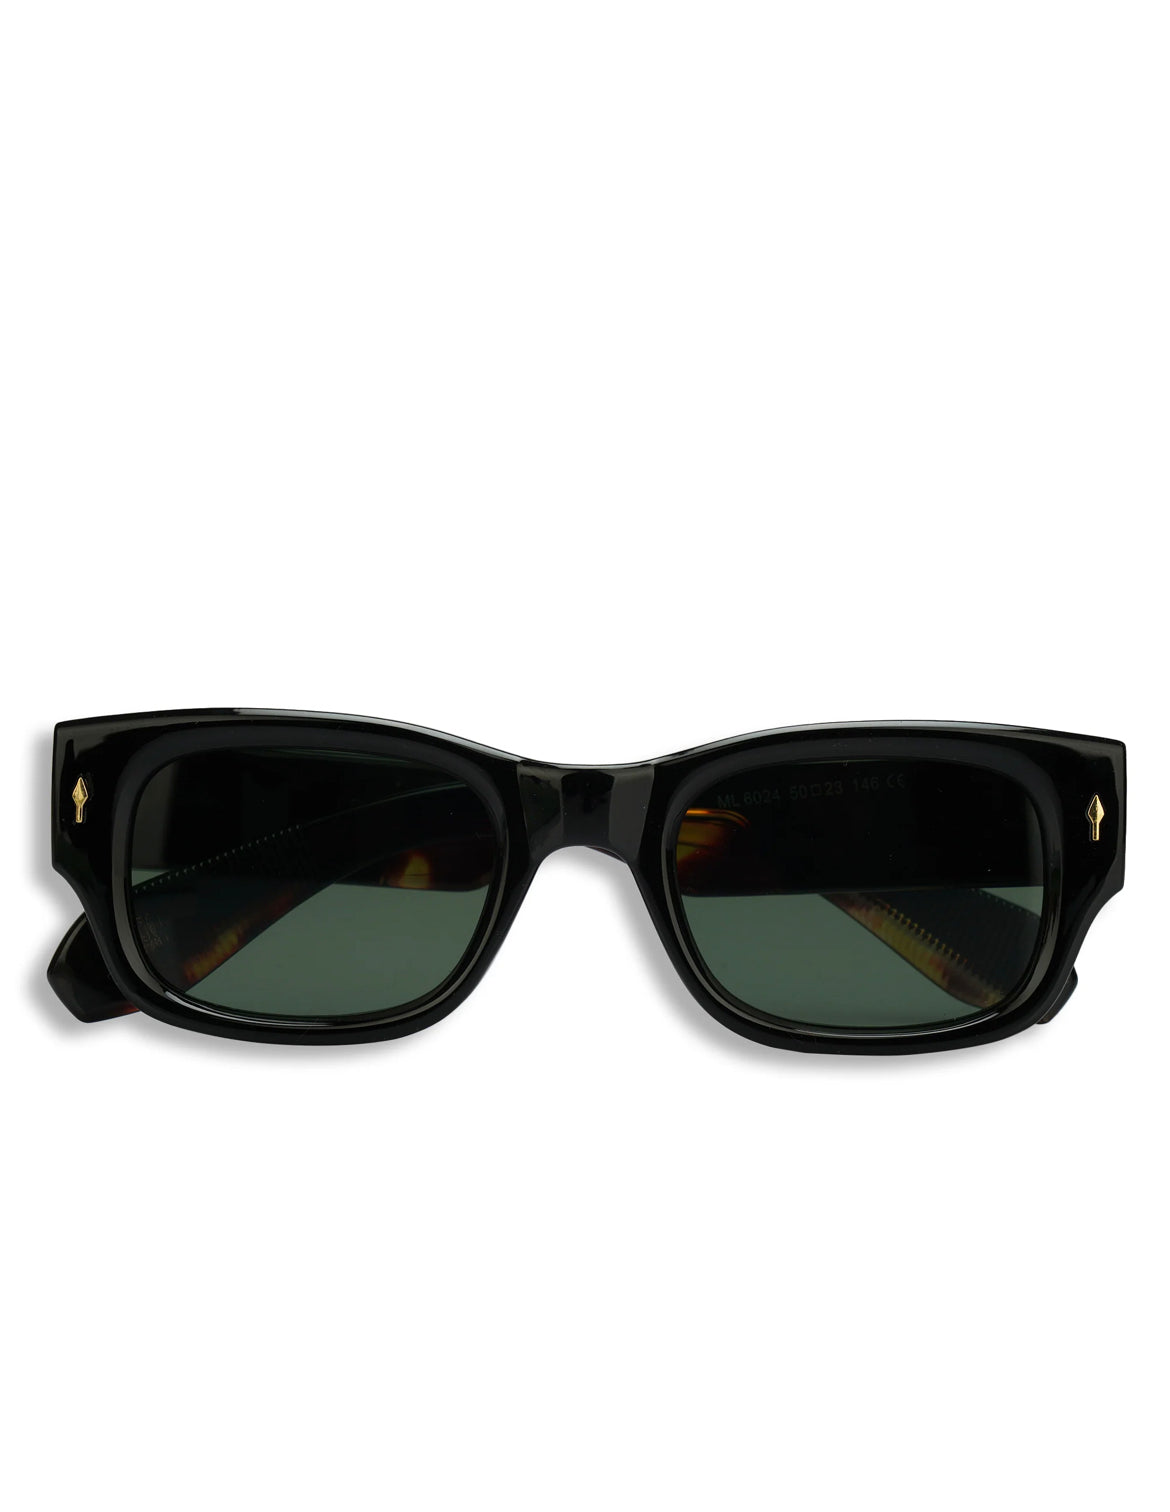 Rivet Frame Square lens sunglasses